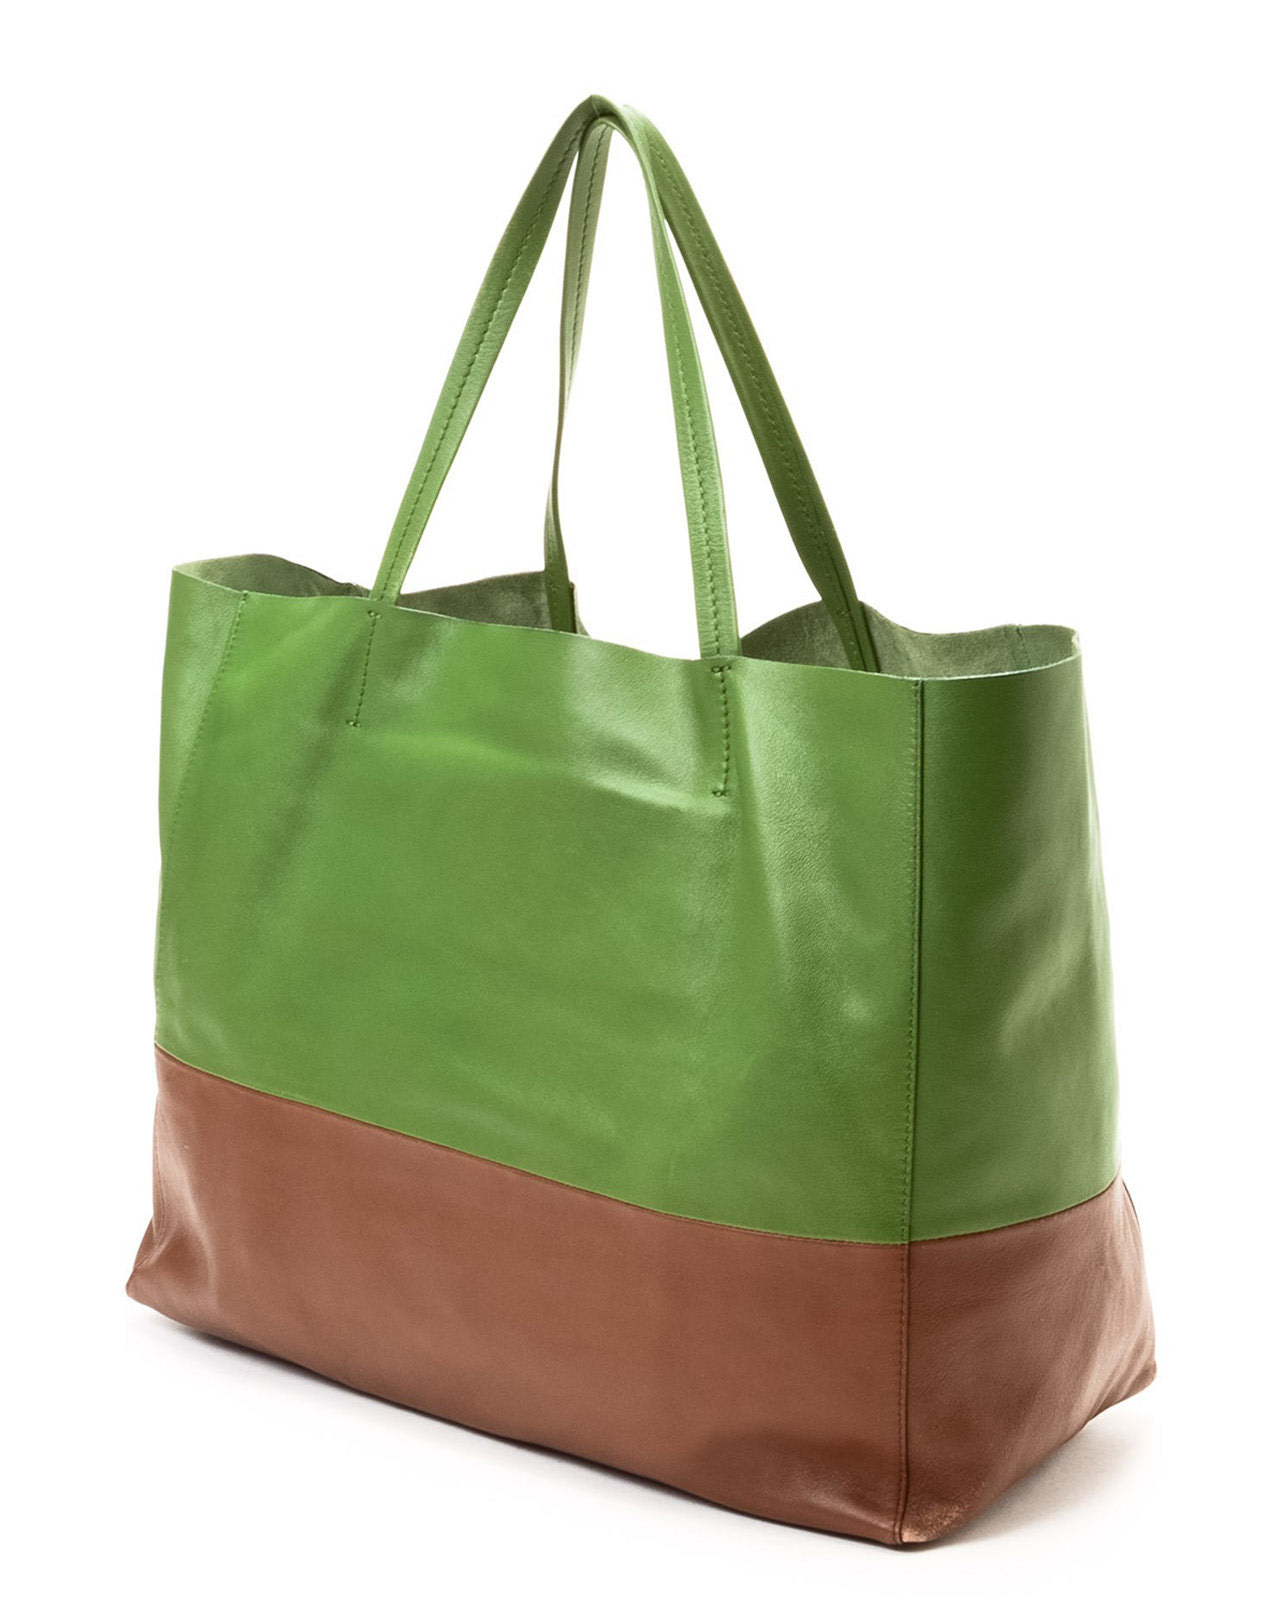 celine trapeze bag for sale - celine anthracite leather handbag cabas